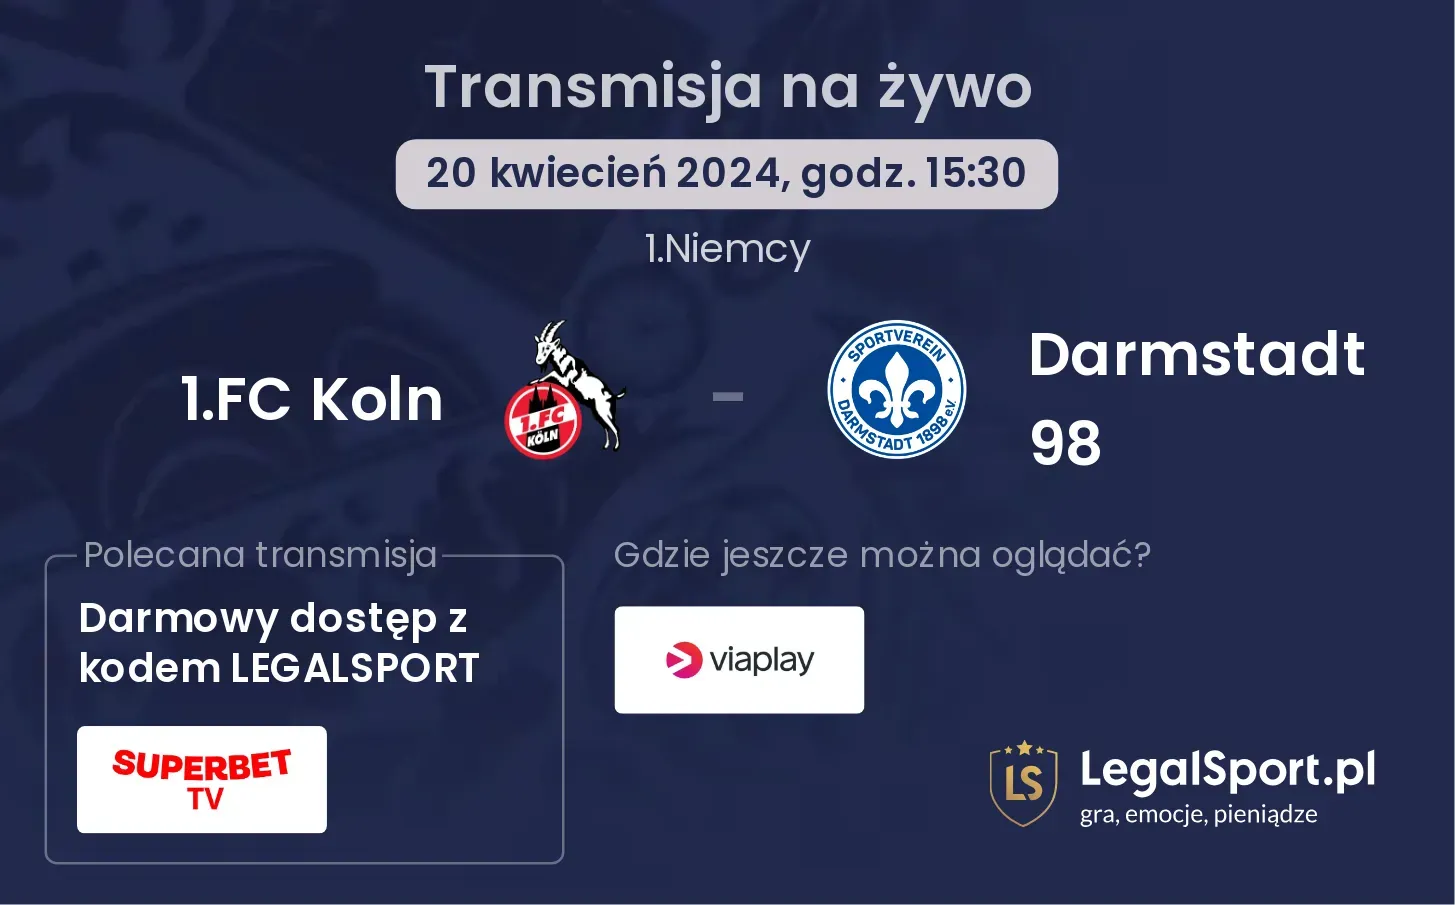 1.FC Koln - Darmstadt 98 transmisja na żywo